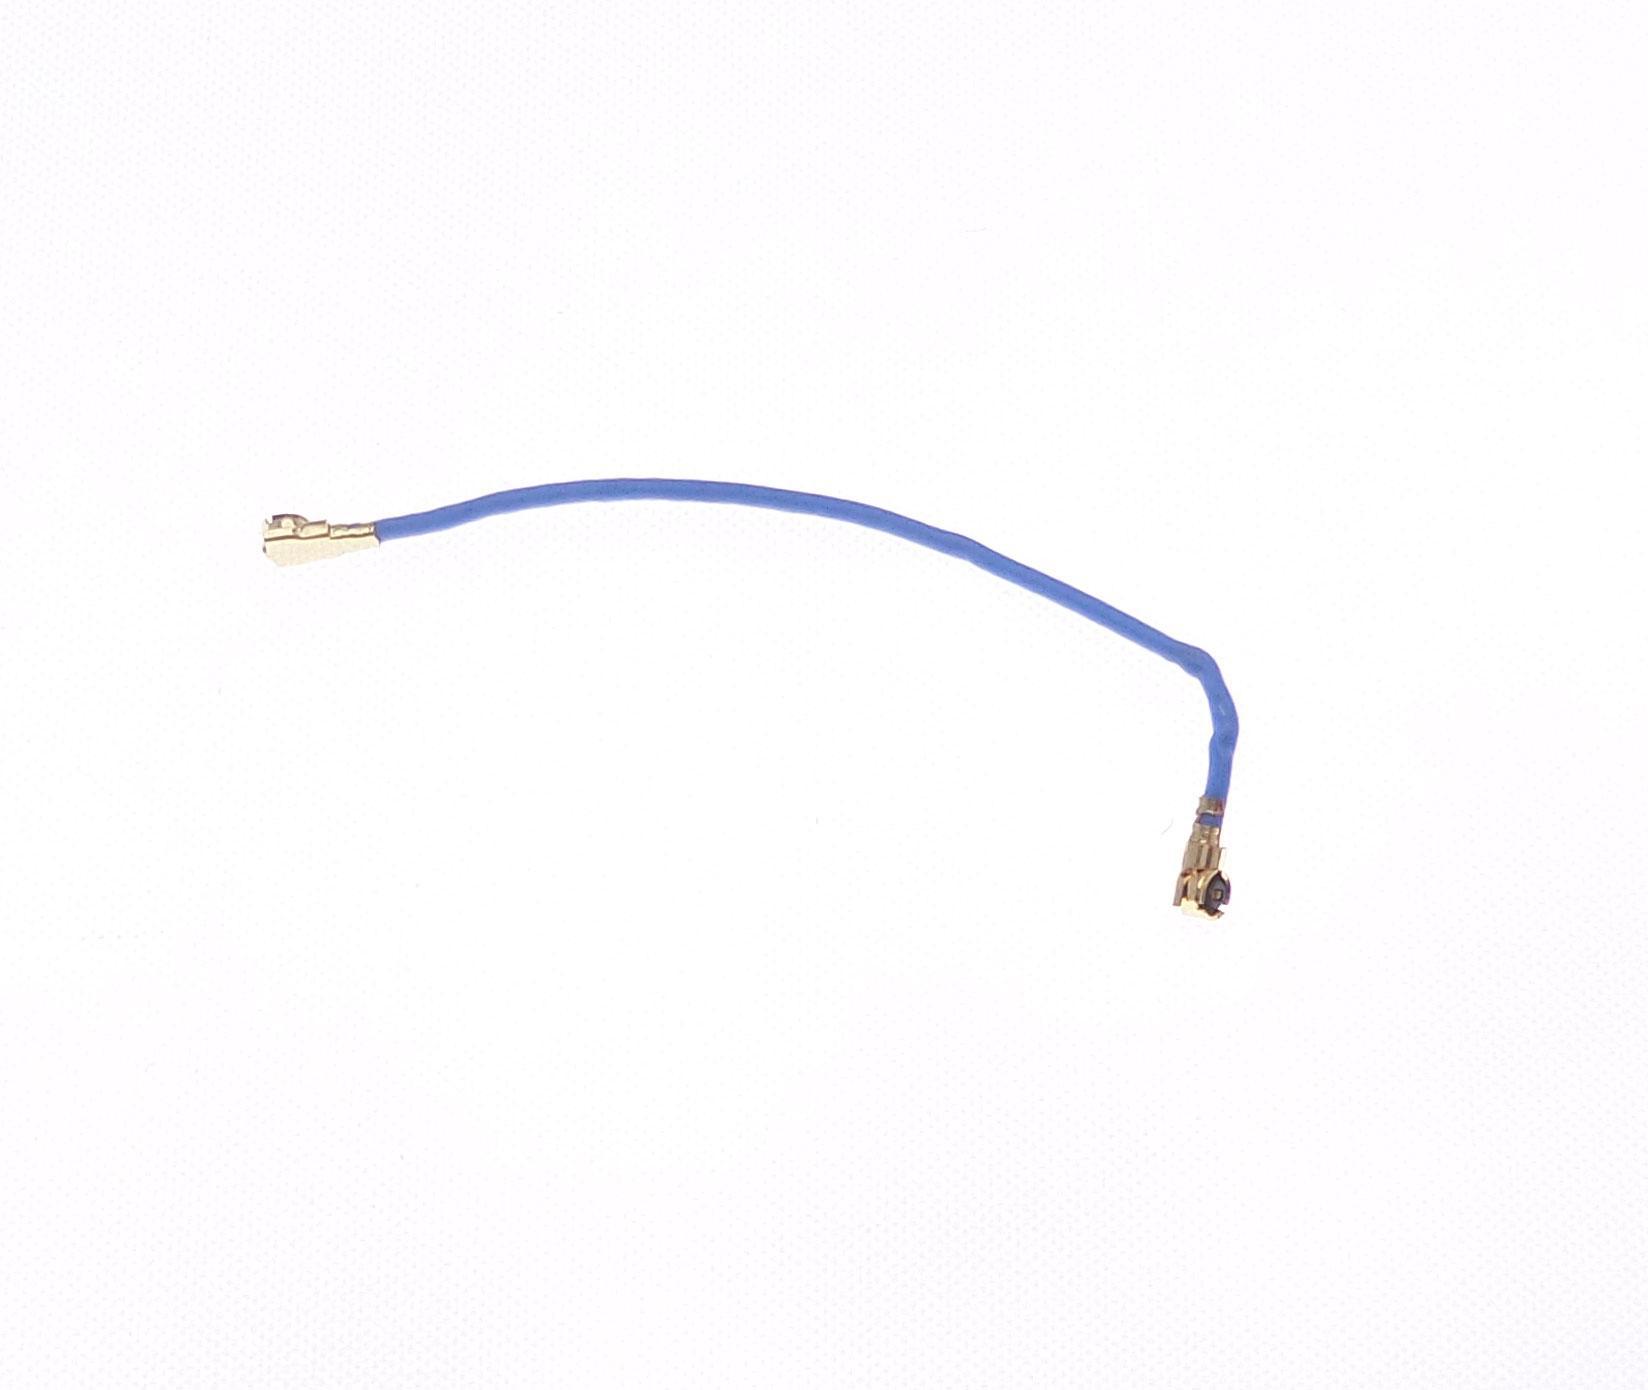 Cable coaxial bleu pour Samsung Galaxy S5 SM-G900F G900A